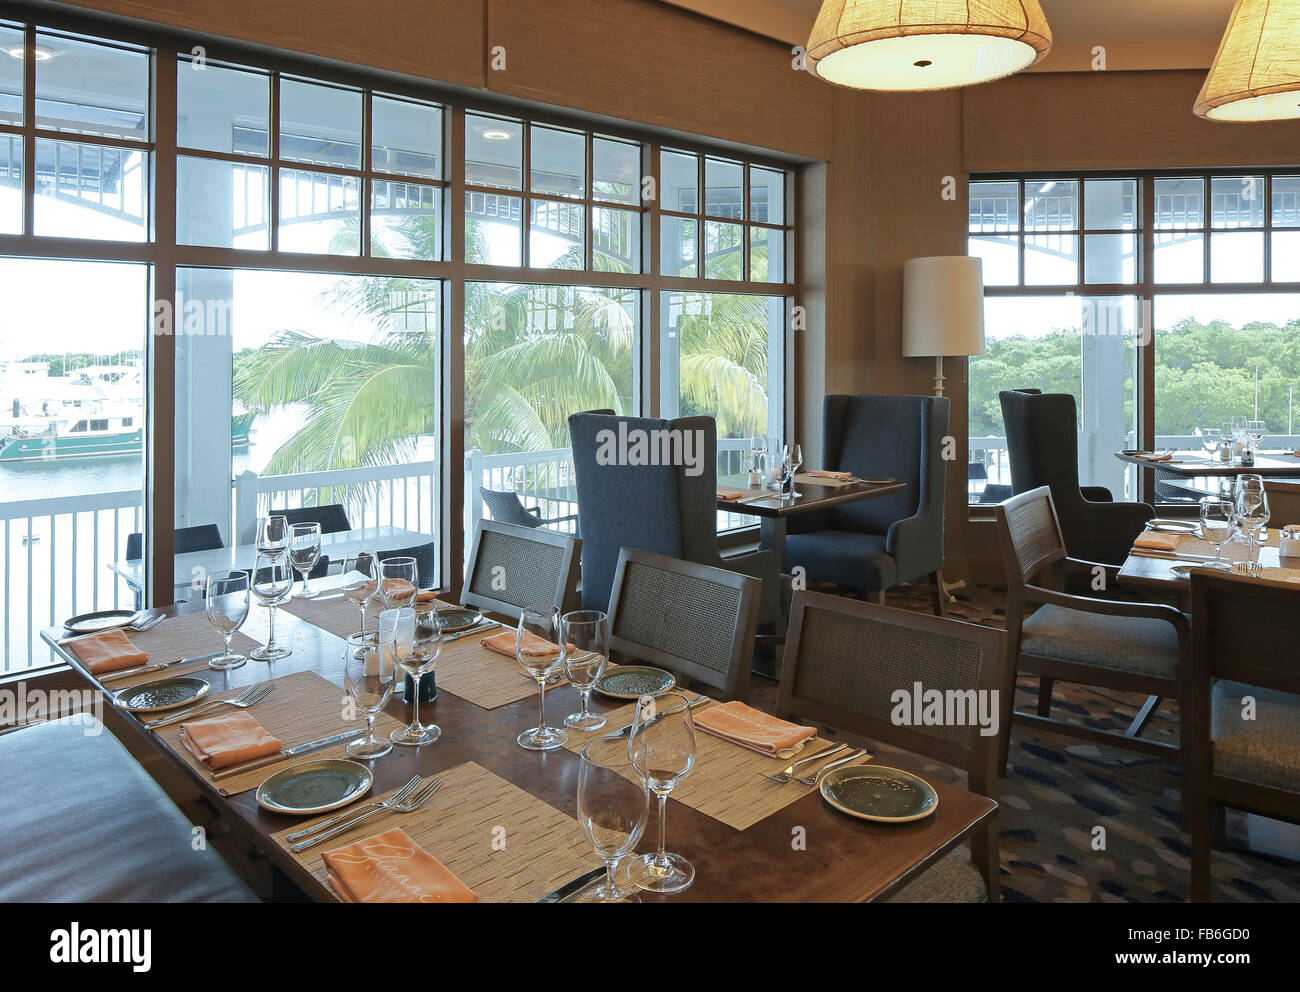 Innenansicht des Restaurants mit Blick auf die Marina. Gianni Ristorante, Key Largo, Vereinigte Staaten von Amerika. Architekt: unbekannt, 2015. Stockfoto